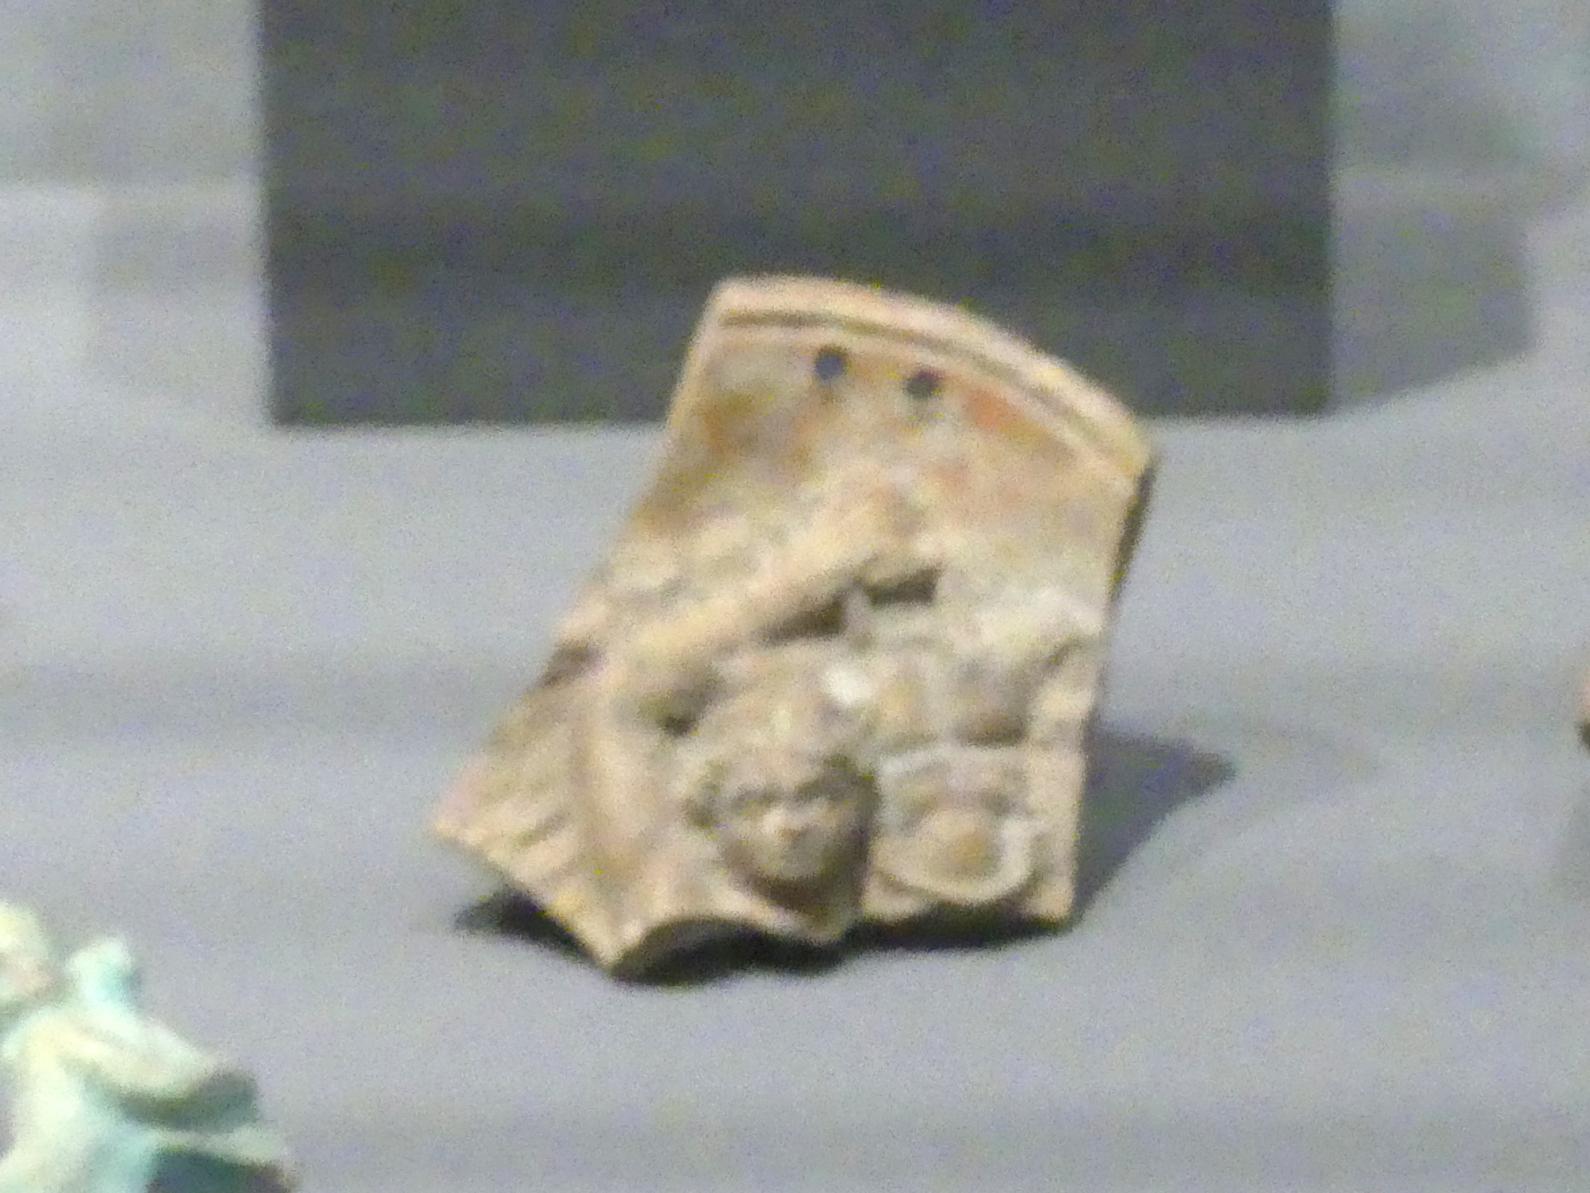 Drei Gefäßscherben mit figürlichen Darstellungen, Römische Kaiserzeit, 27 v. Chr. - 54 n. Chr., 1 - 300, Bild 2/3